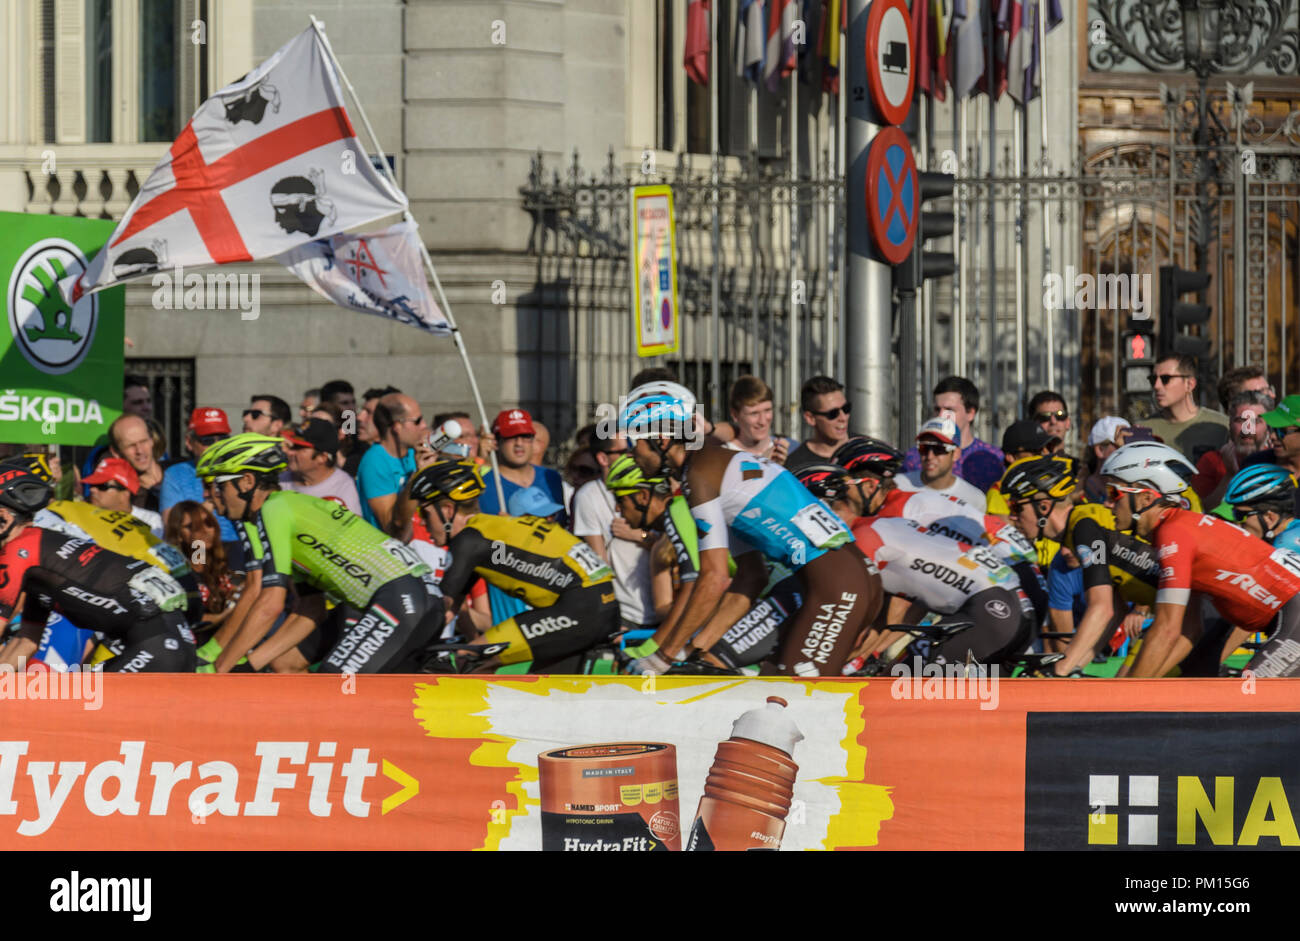 Madrid, Spagna. Il 16 settembre, 2018. I piloti durante la fase finale della corsa di ciclismo "Vuelta a España' il 16 settembre 2018 in via Castellana, Madrid, Spagna. Enrique Davó/Alamy Live News Foto Stock